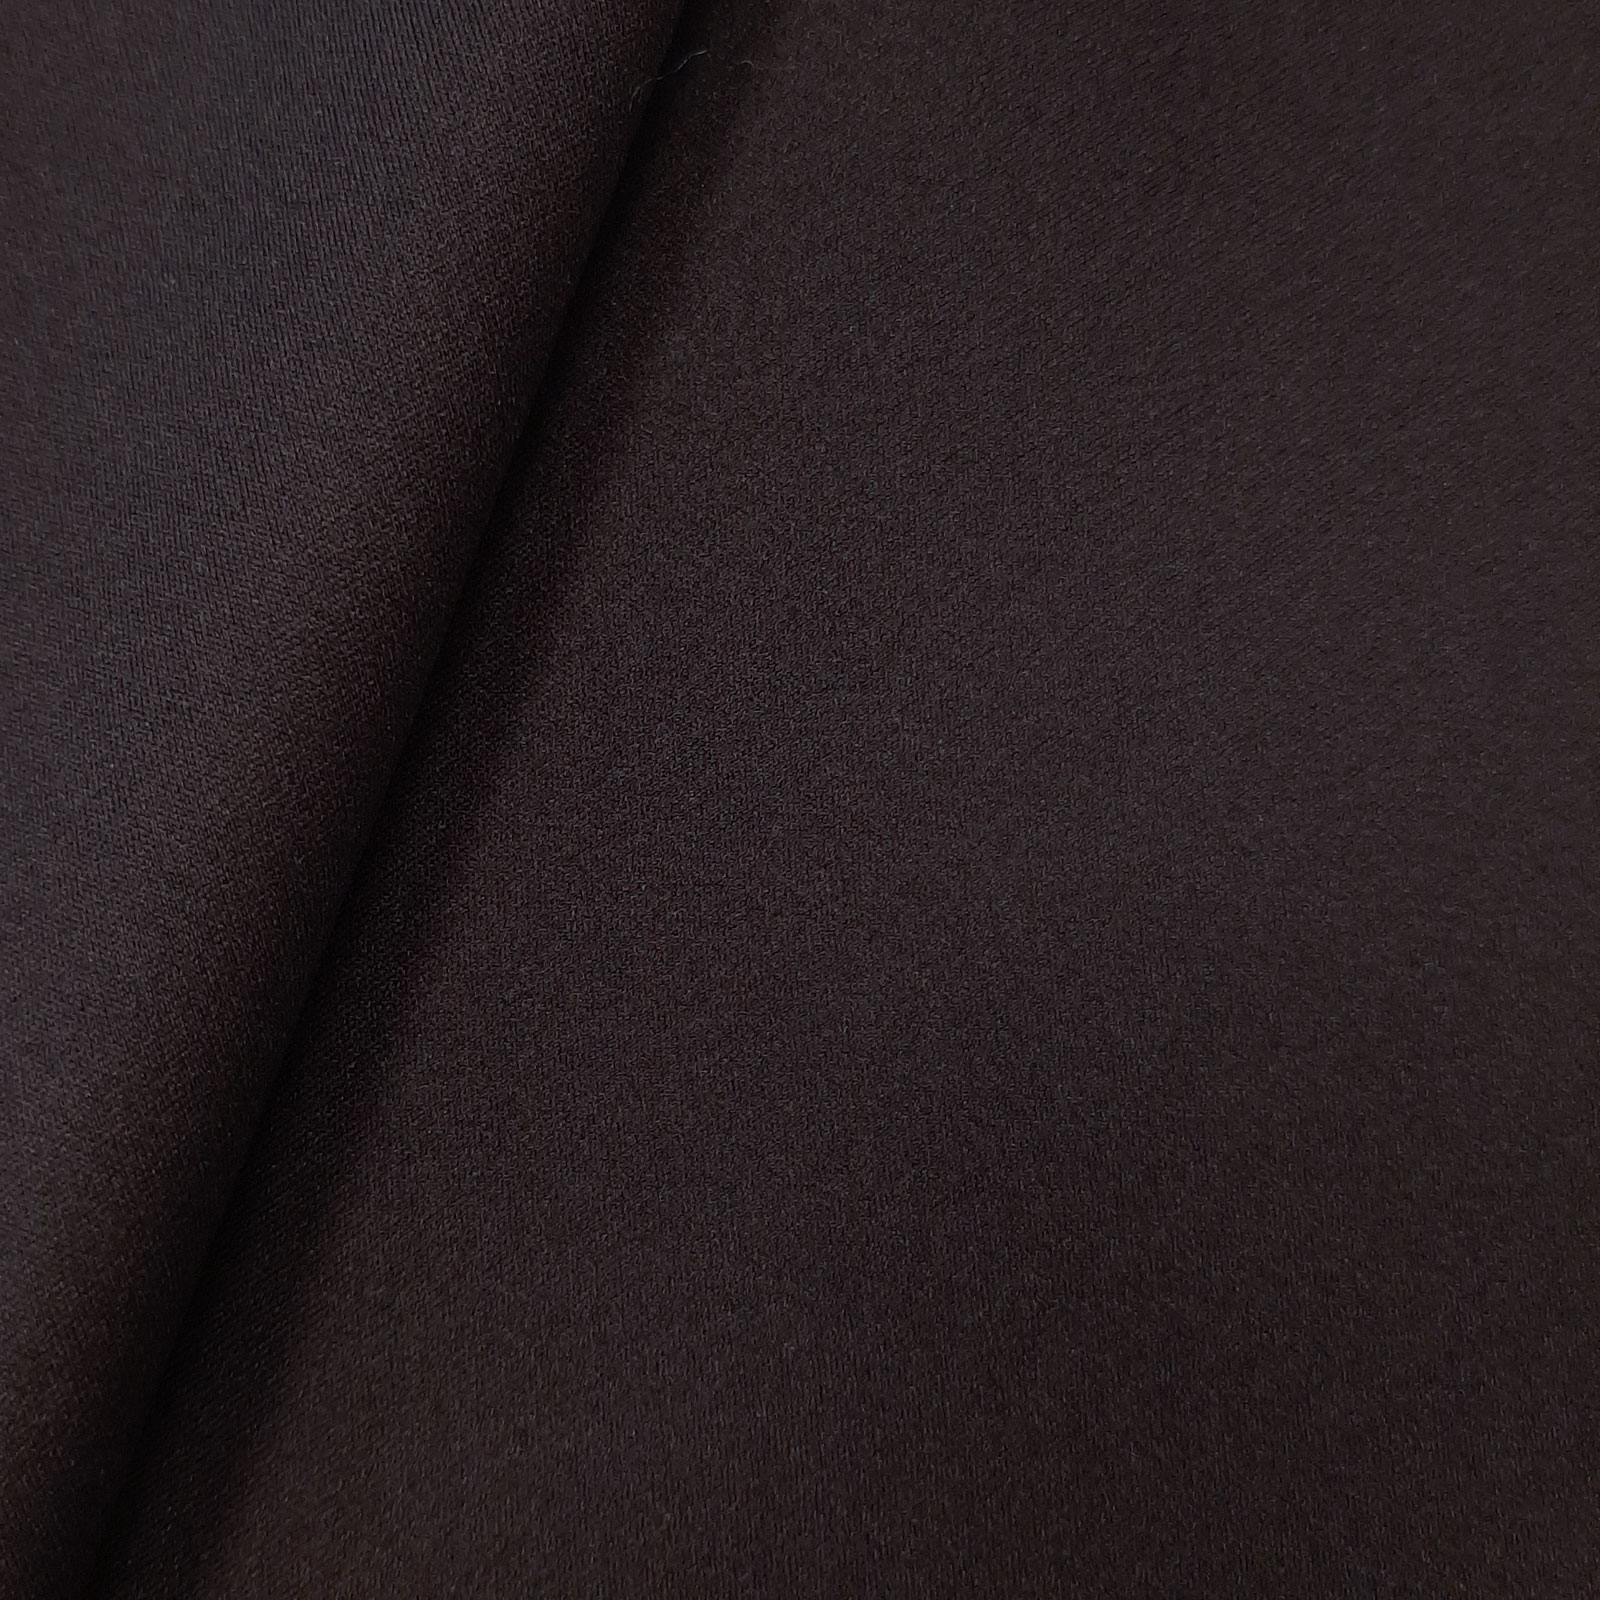 Denali - elastische softshell met klimaatmembraan - zwart